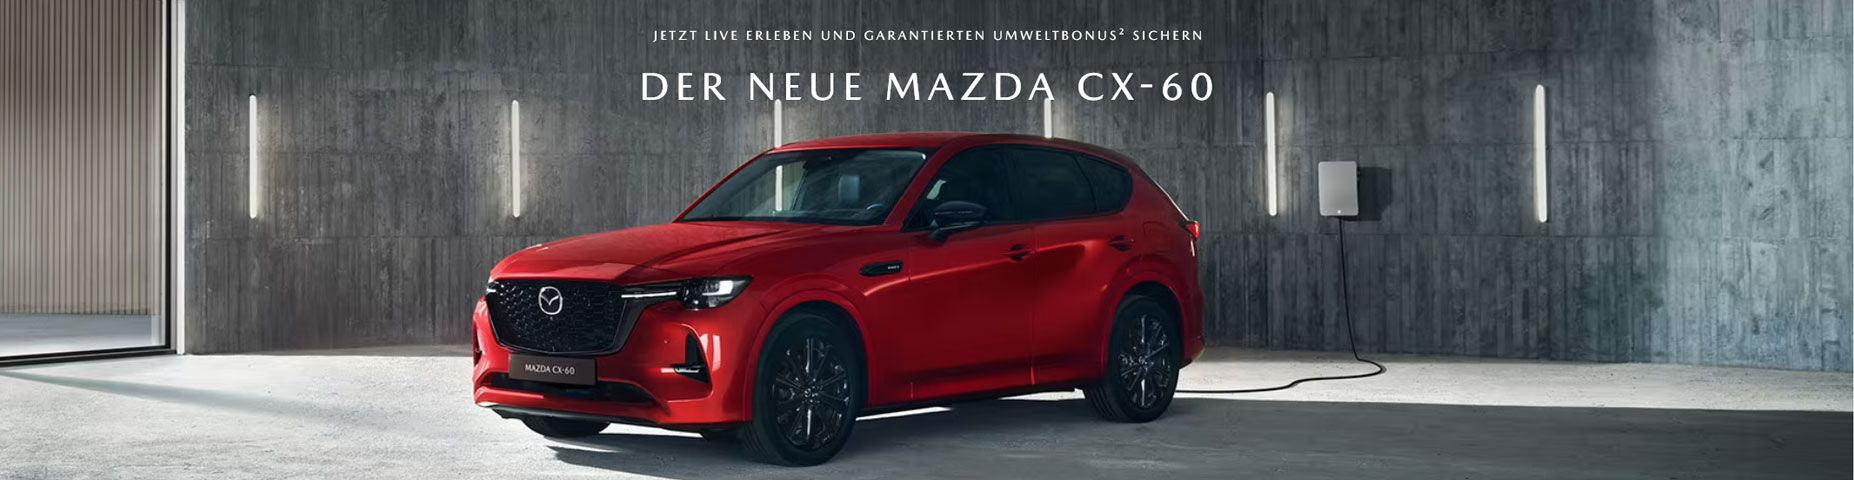 Der neue Mazda CX-60